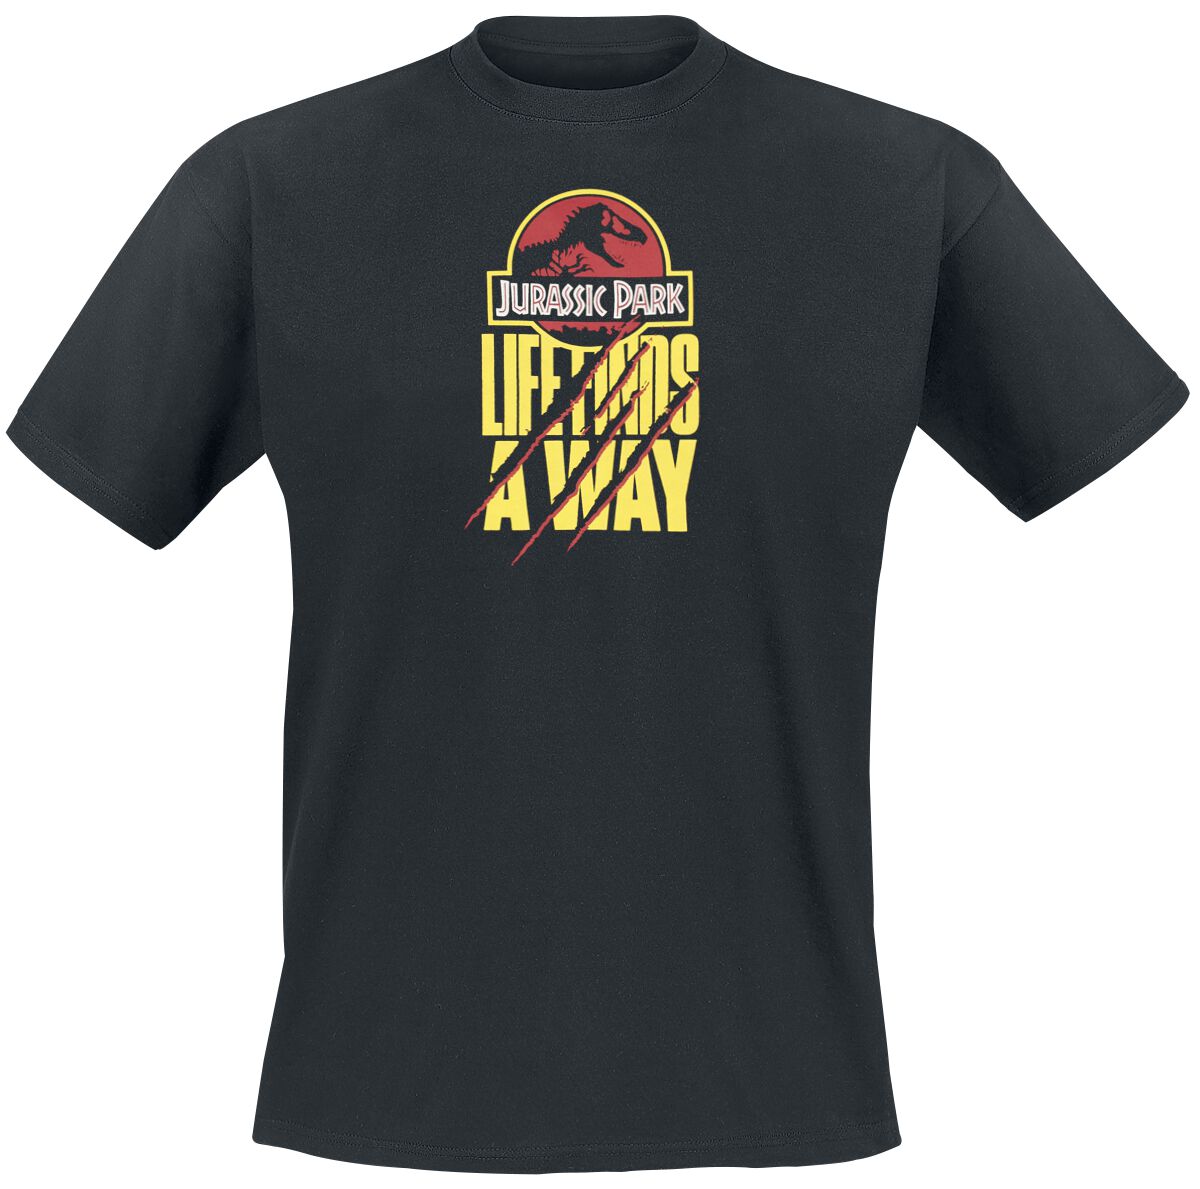 Jurassic Park T-Shirt - Life Finds A Way - S bis XXL - für Männer - Größe M - schwarz  - Lizenzierter Fanartikel von Jurassic Park